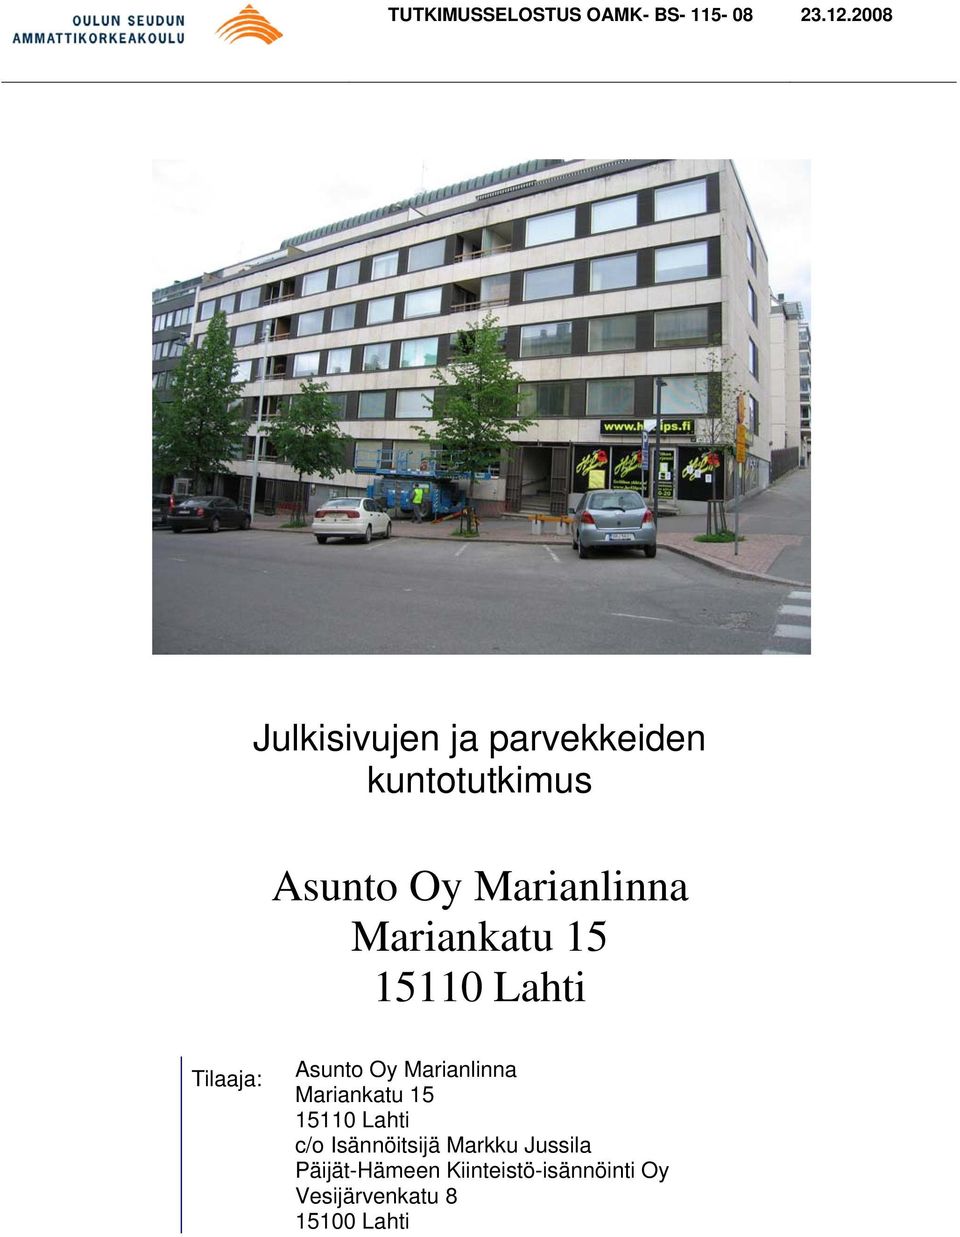 Marianlinna Mariankatu 15 15110 Lahti Tilaaja: Asunto Oy